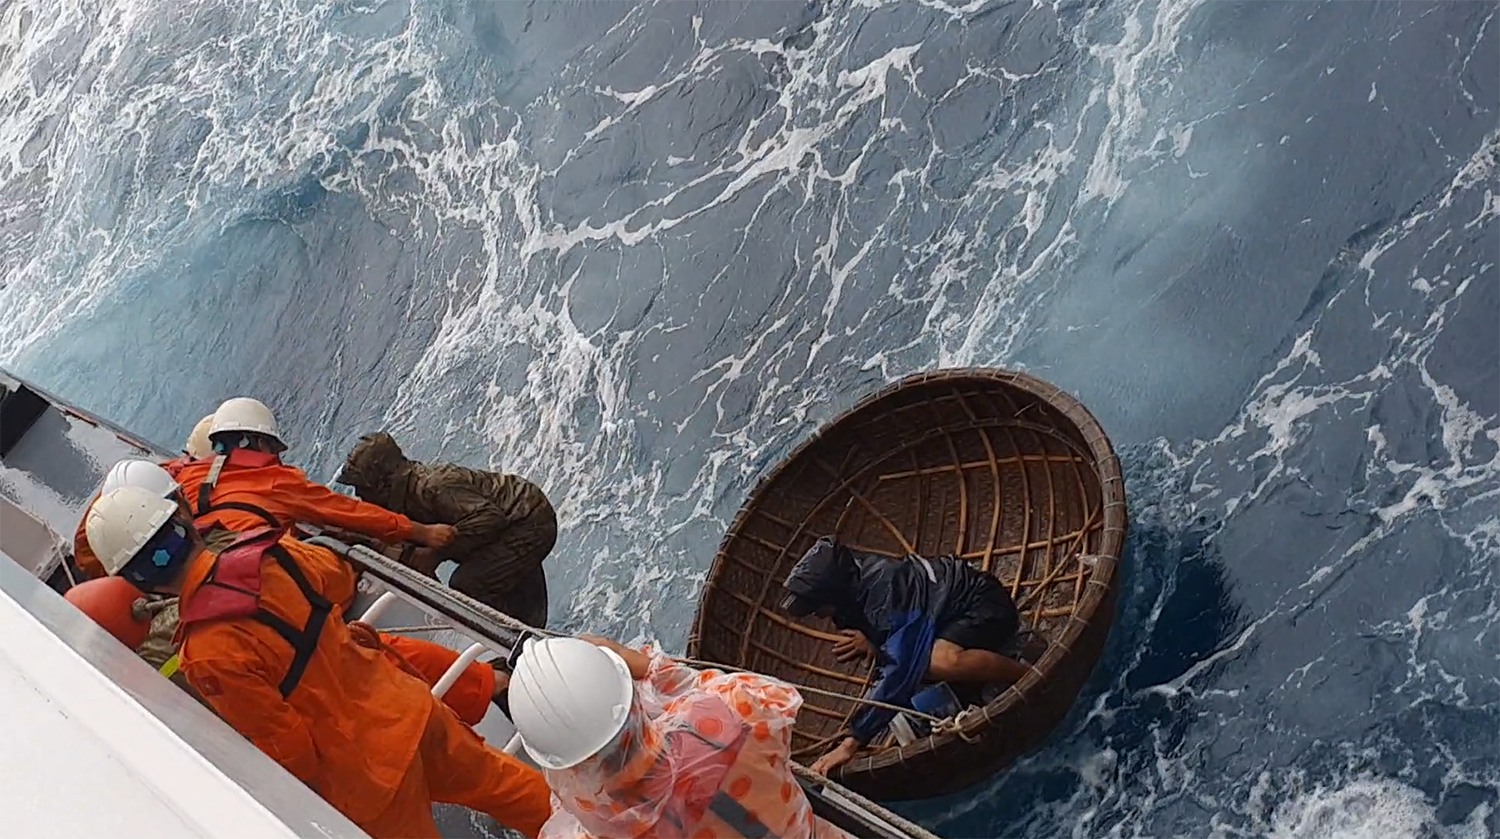 Cứu 2 thuyền viên trên tàu cá bị chìm ở vùng biển tỉnh Quảng Nam - Ảnh 2.